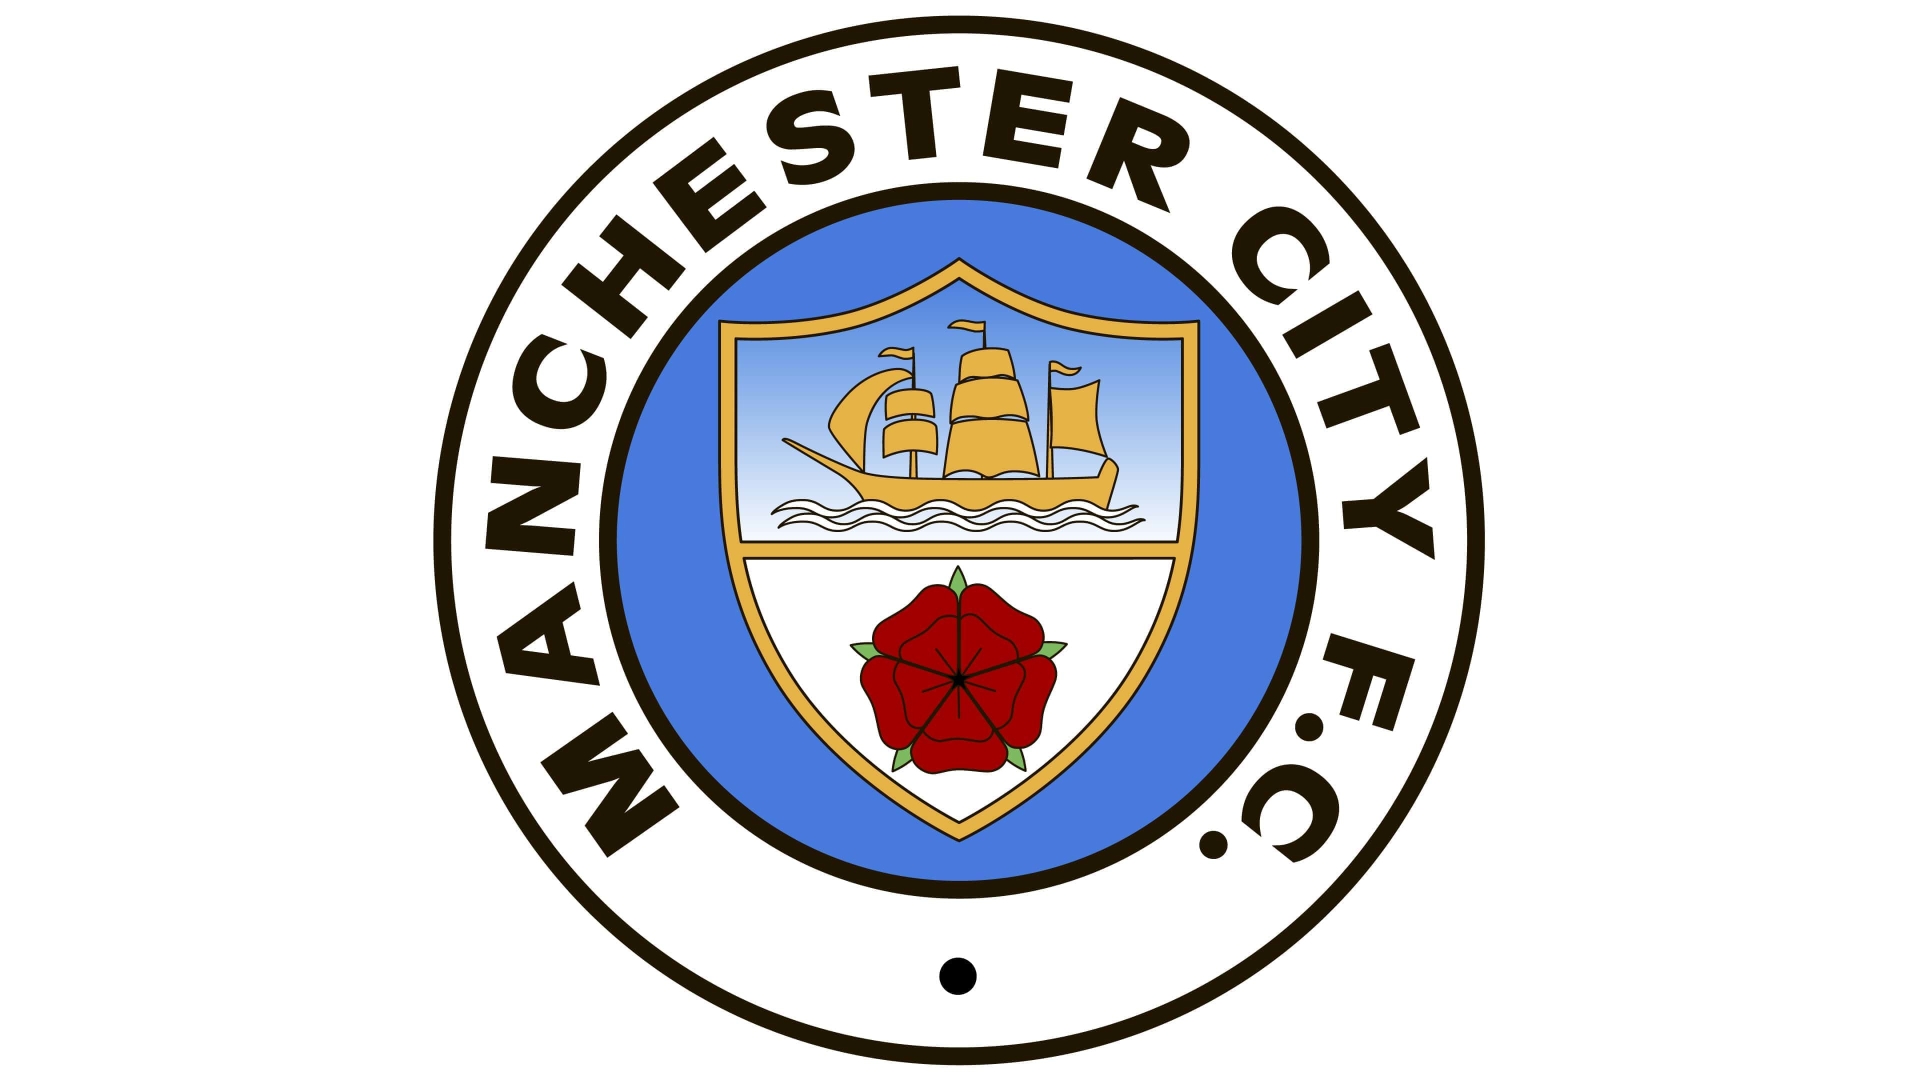 Descarga gratuita de fondo de pantalla para móvil de Fútbol, Logo, Emblema, Deporte, Manchester City F C.